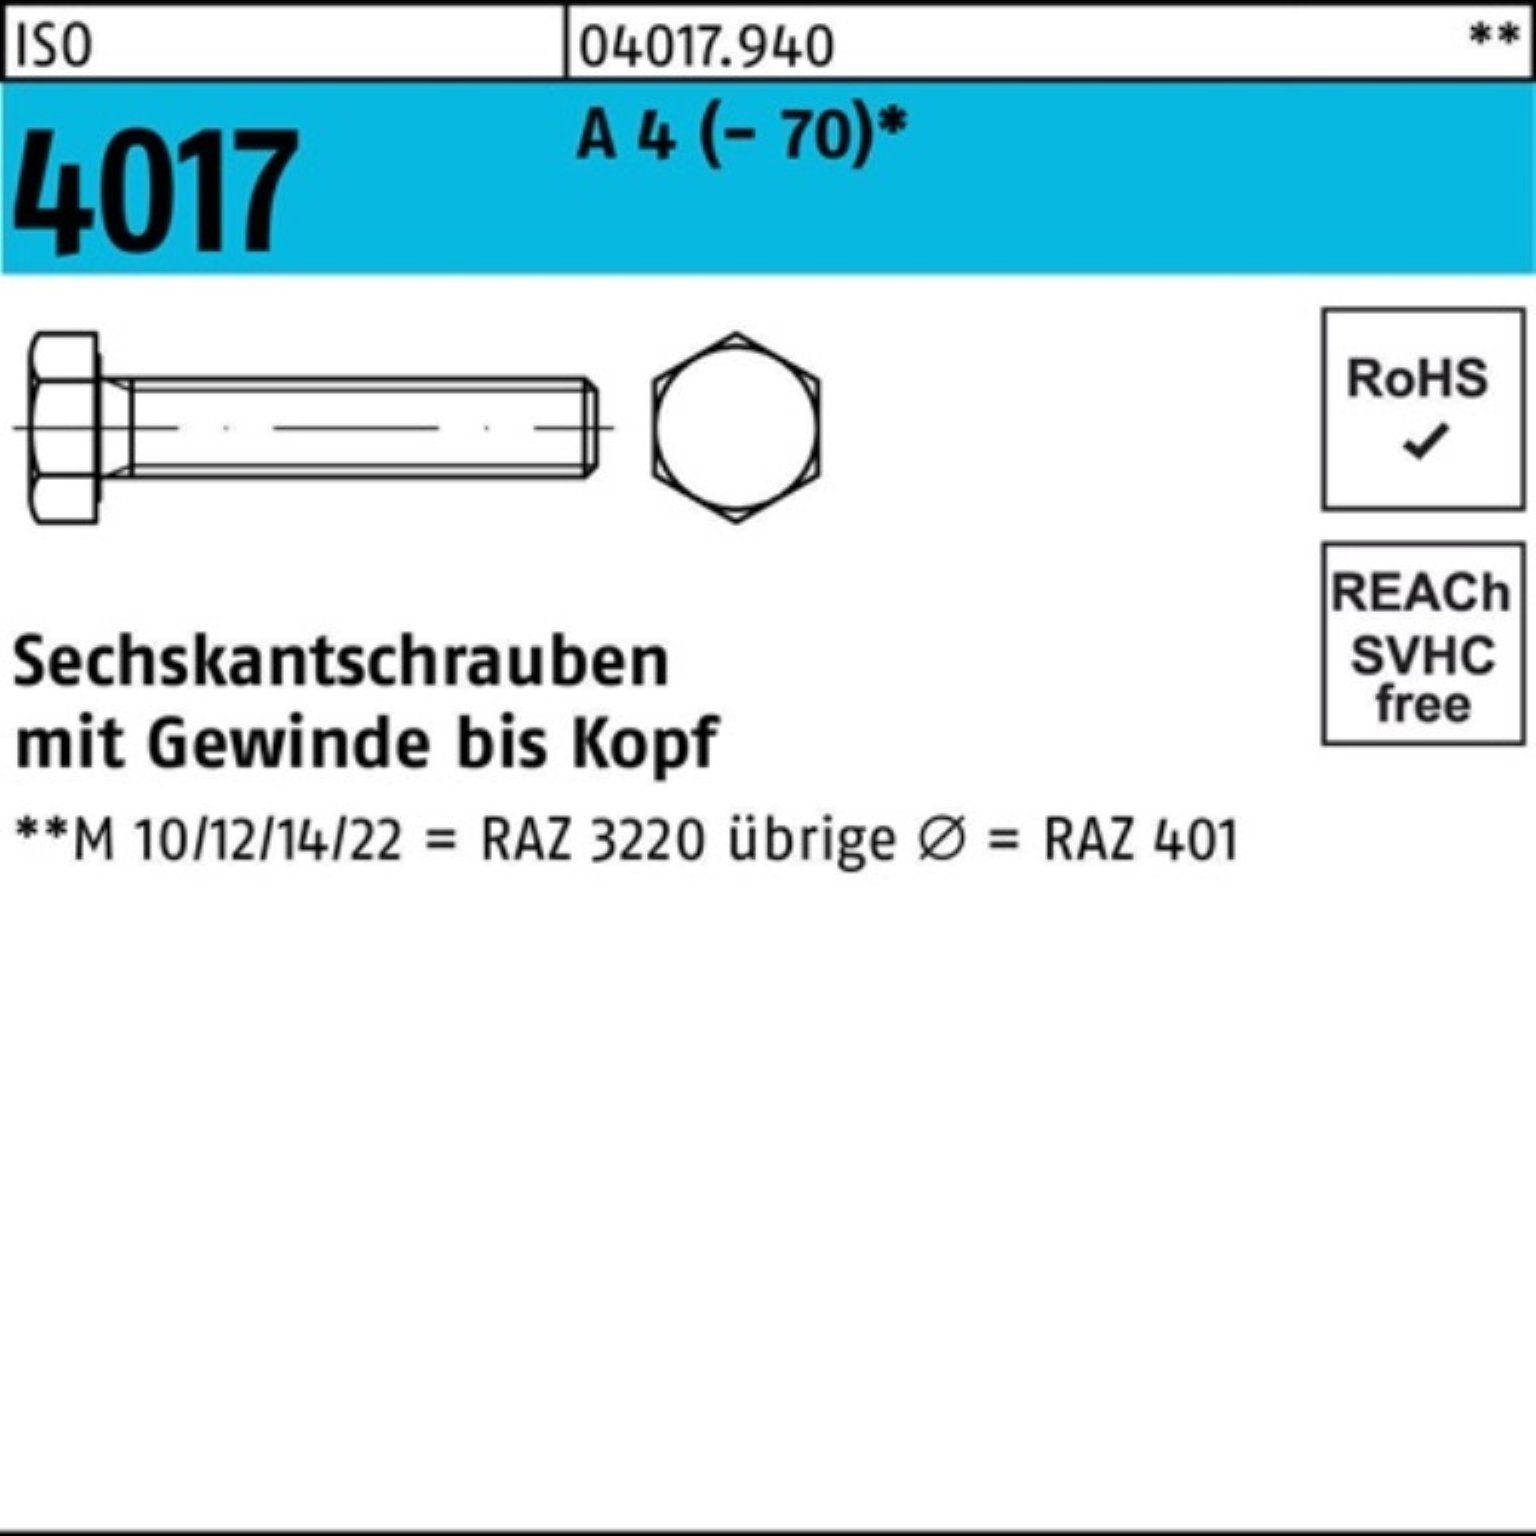 Bufab Sechskantschraube Pack 55 Sechskantschraube Stück (70) 4017 4 A 100er ISO M22x I 1 VG